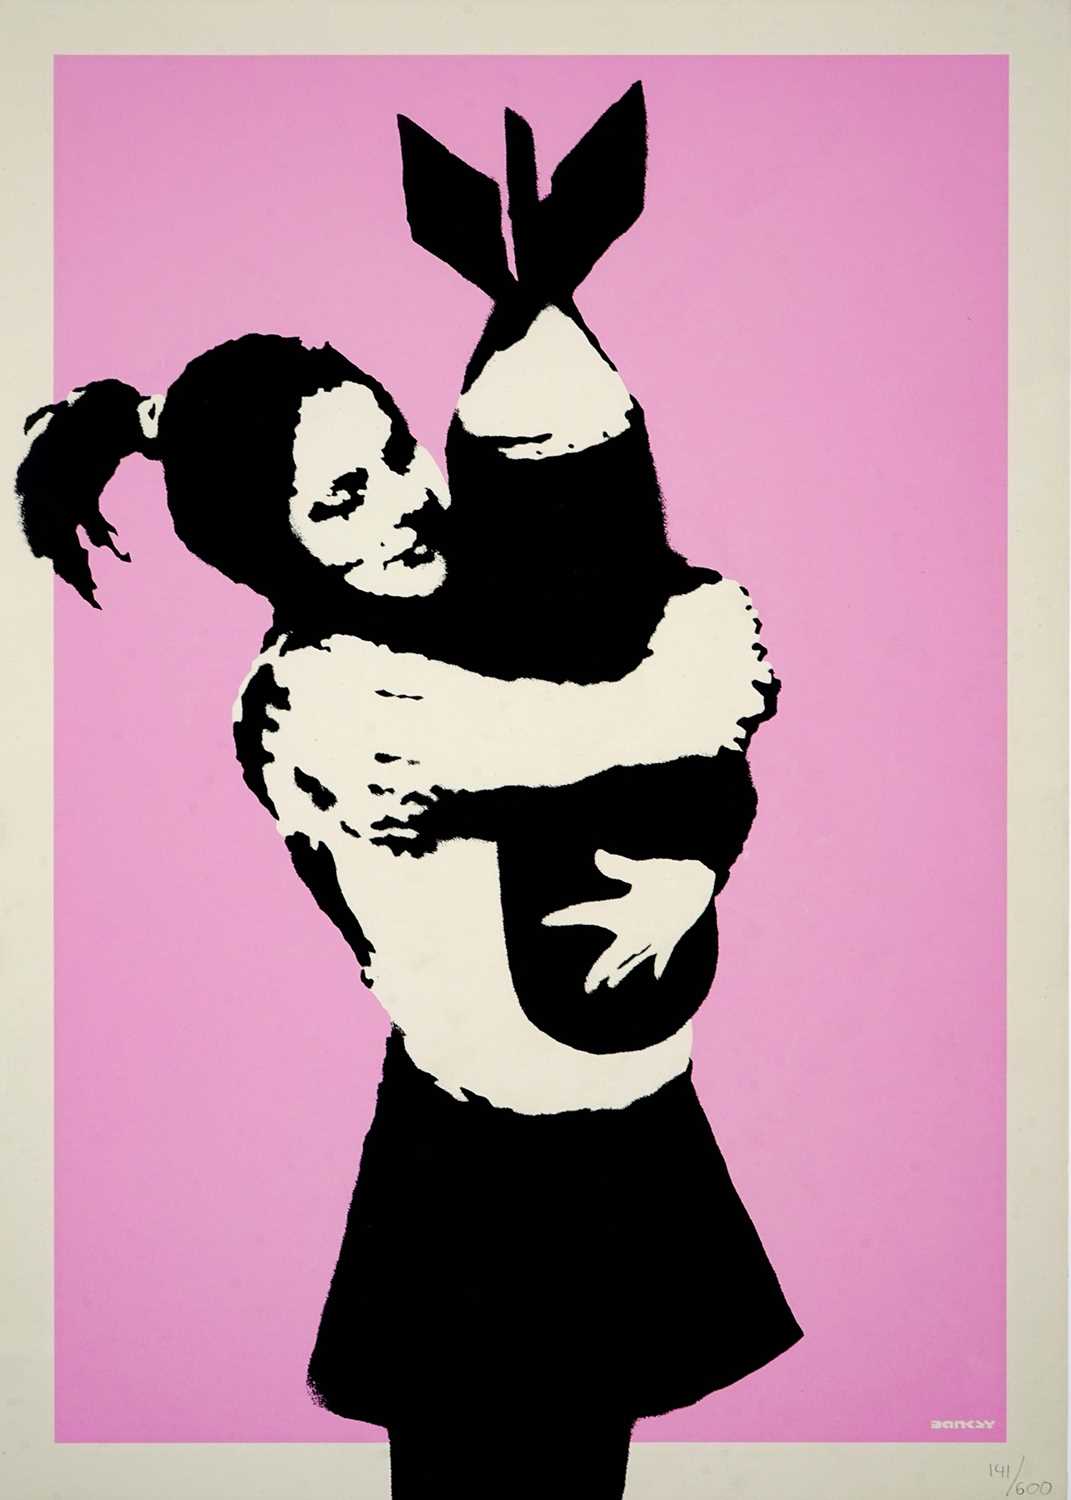 Lot 241 - Banksy (British 1974-), 'Bomb Hugger', 2003